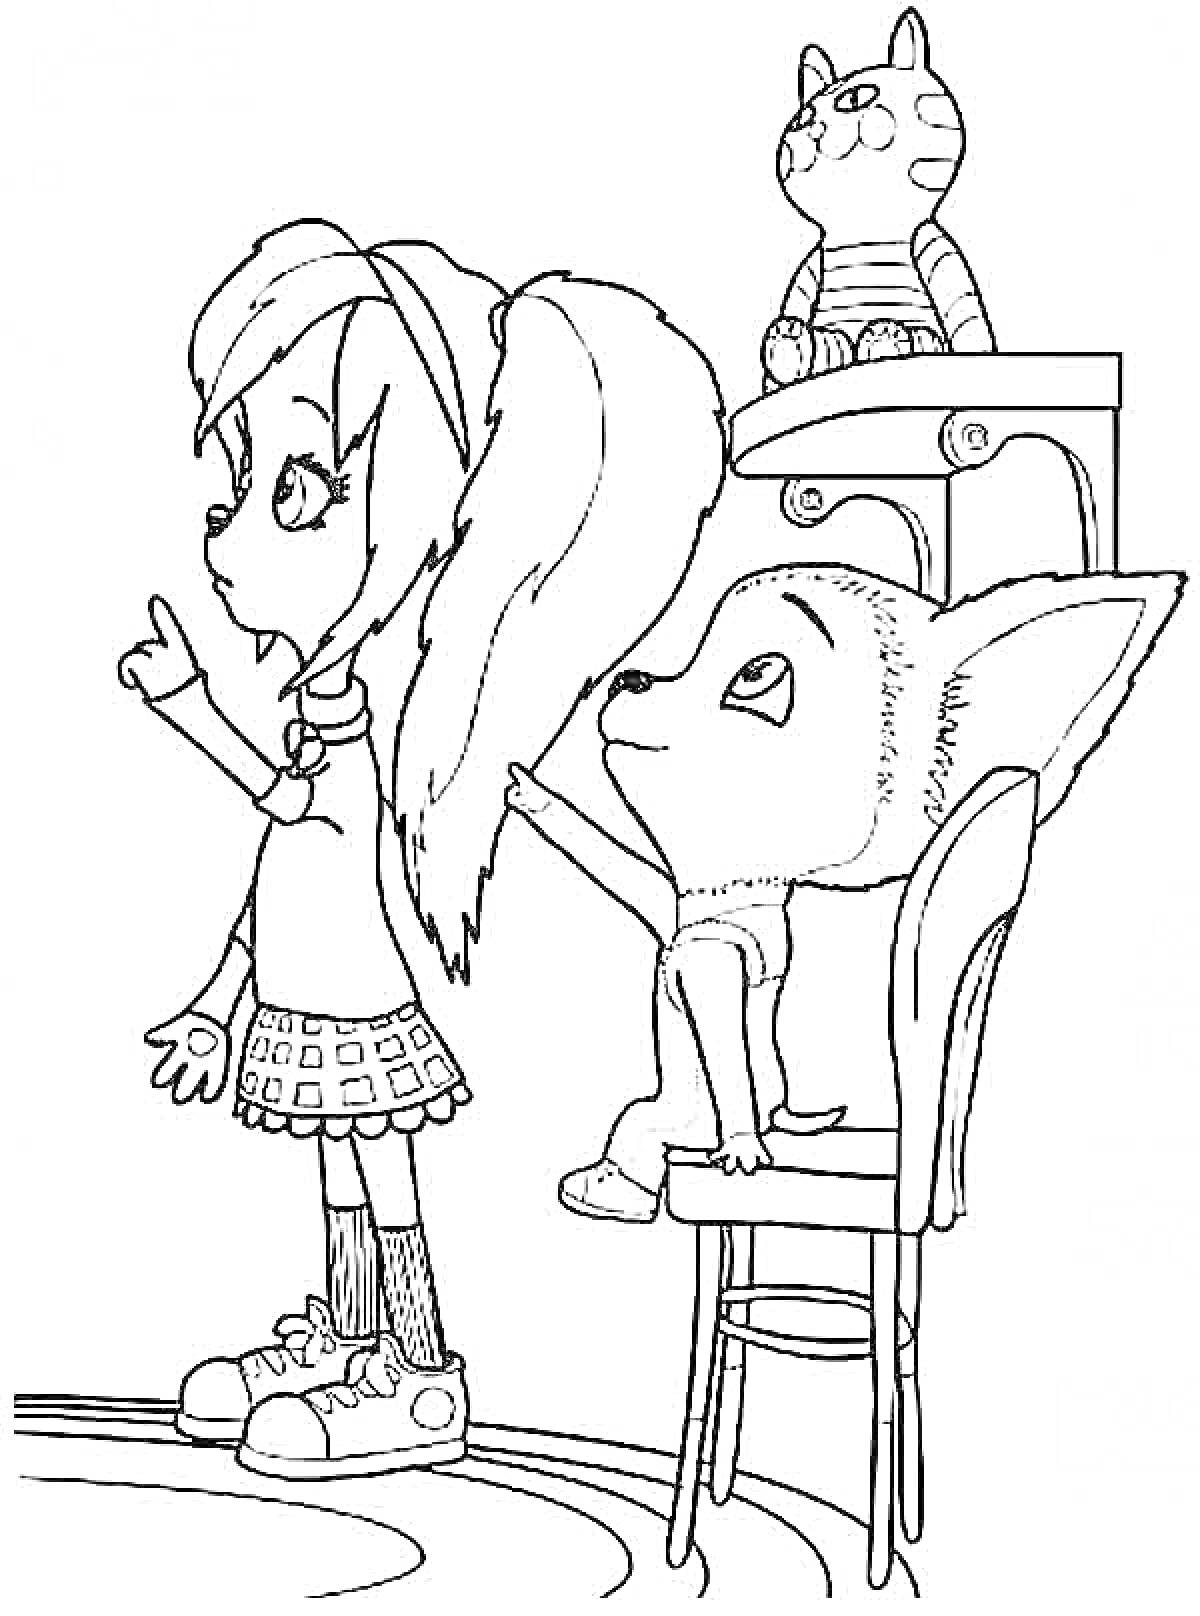 Раскраска Девочка с длинными ушами, мальчик на стуле и котенок на столе